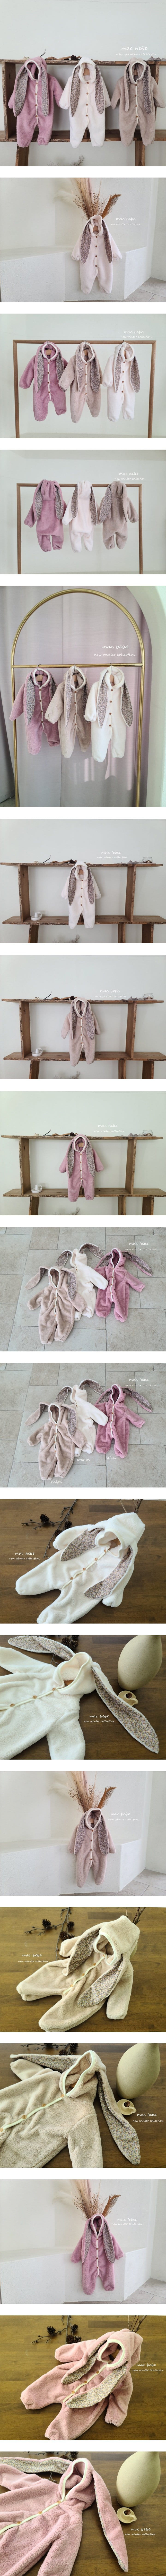 Mac - Korean Baby Fashion - #babygirlfashion - Rabbit All In One